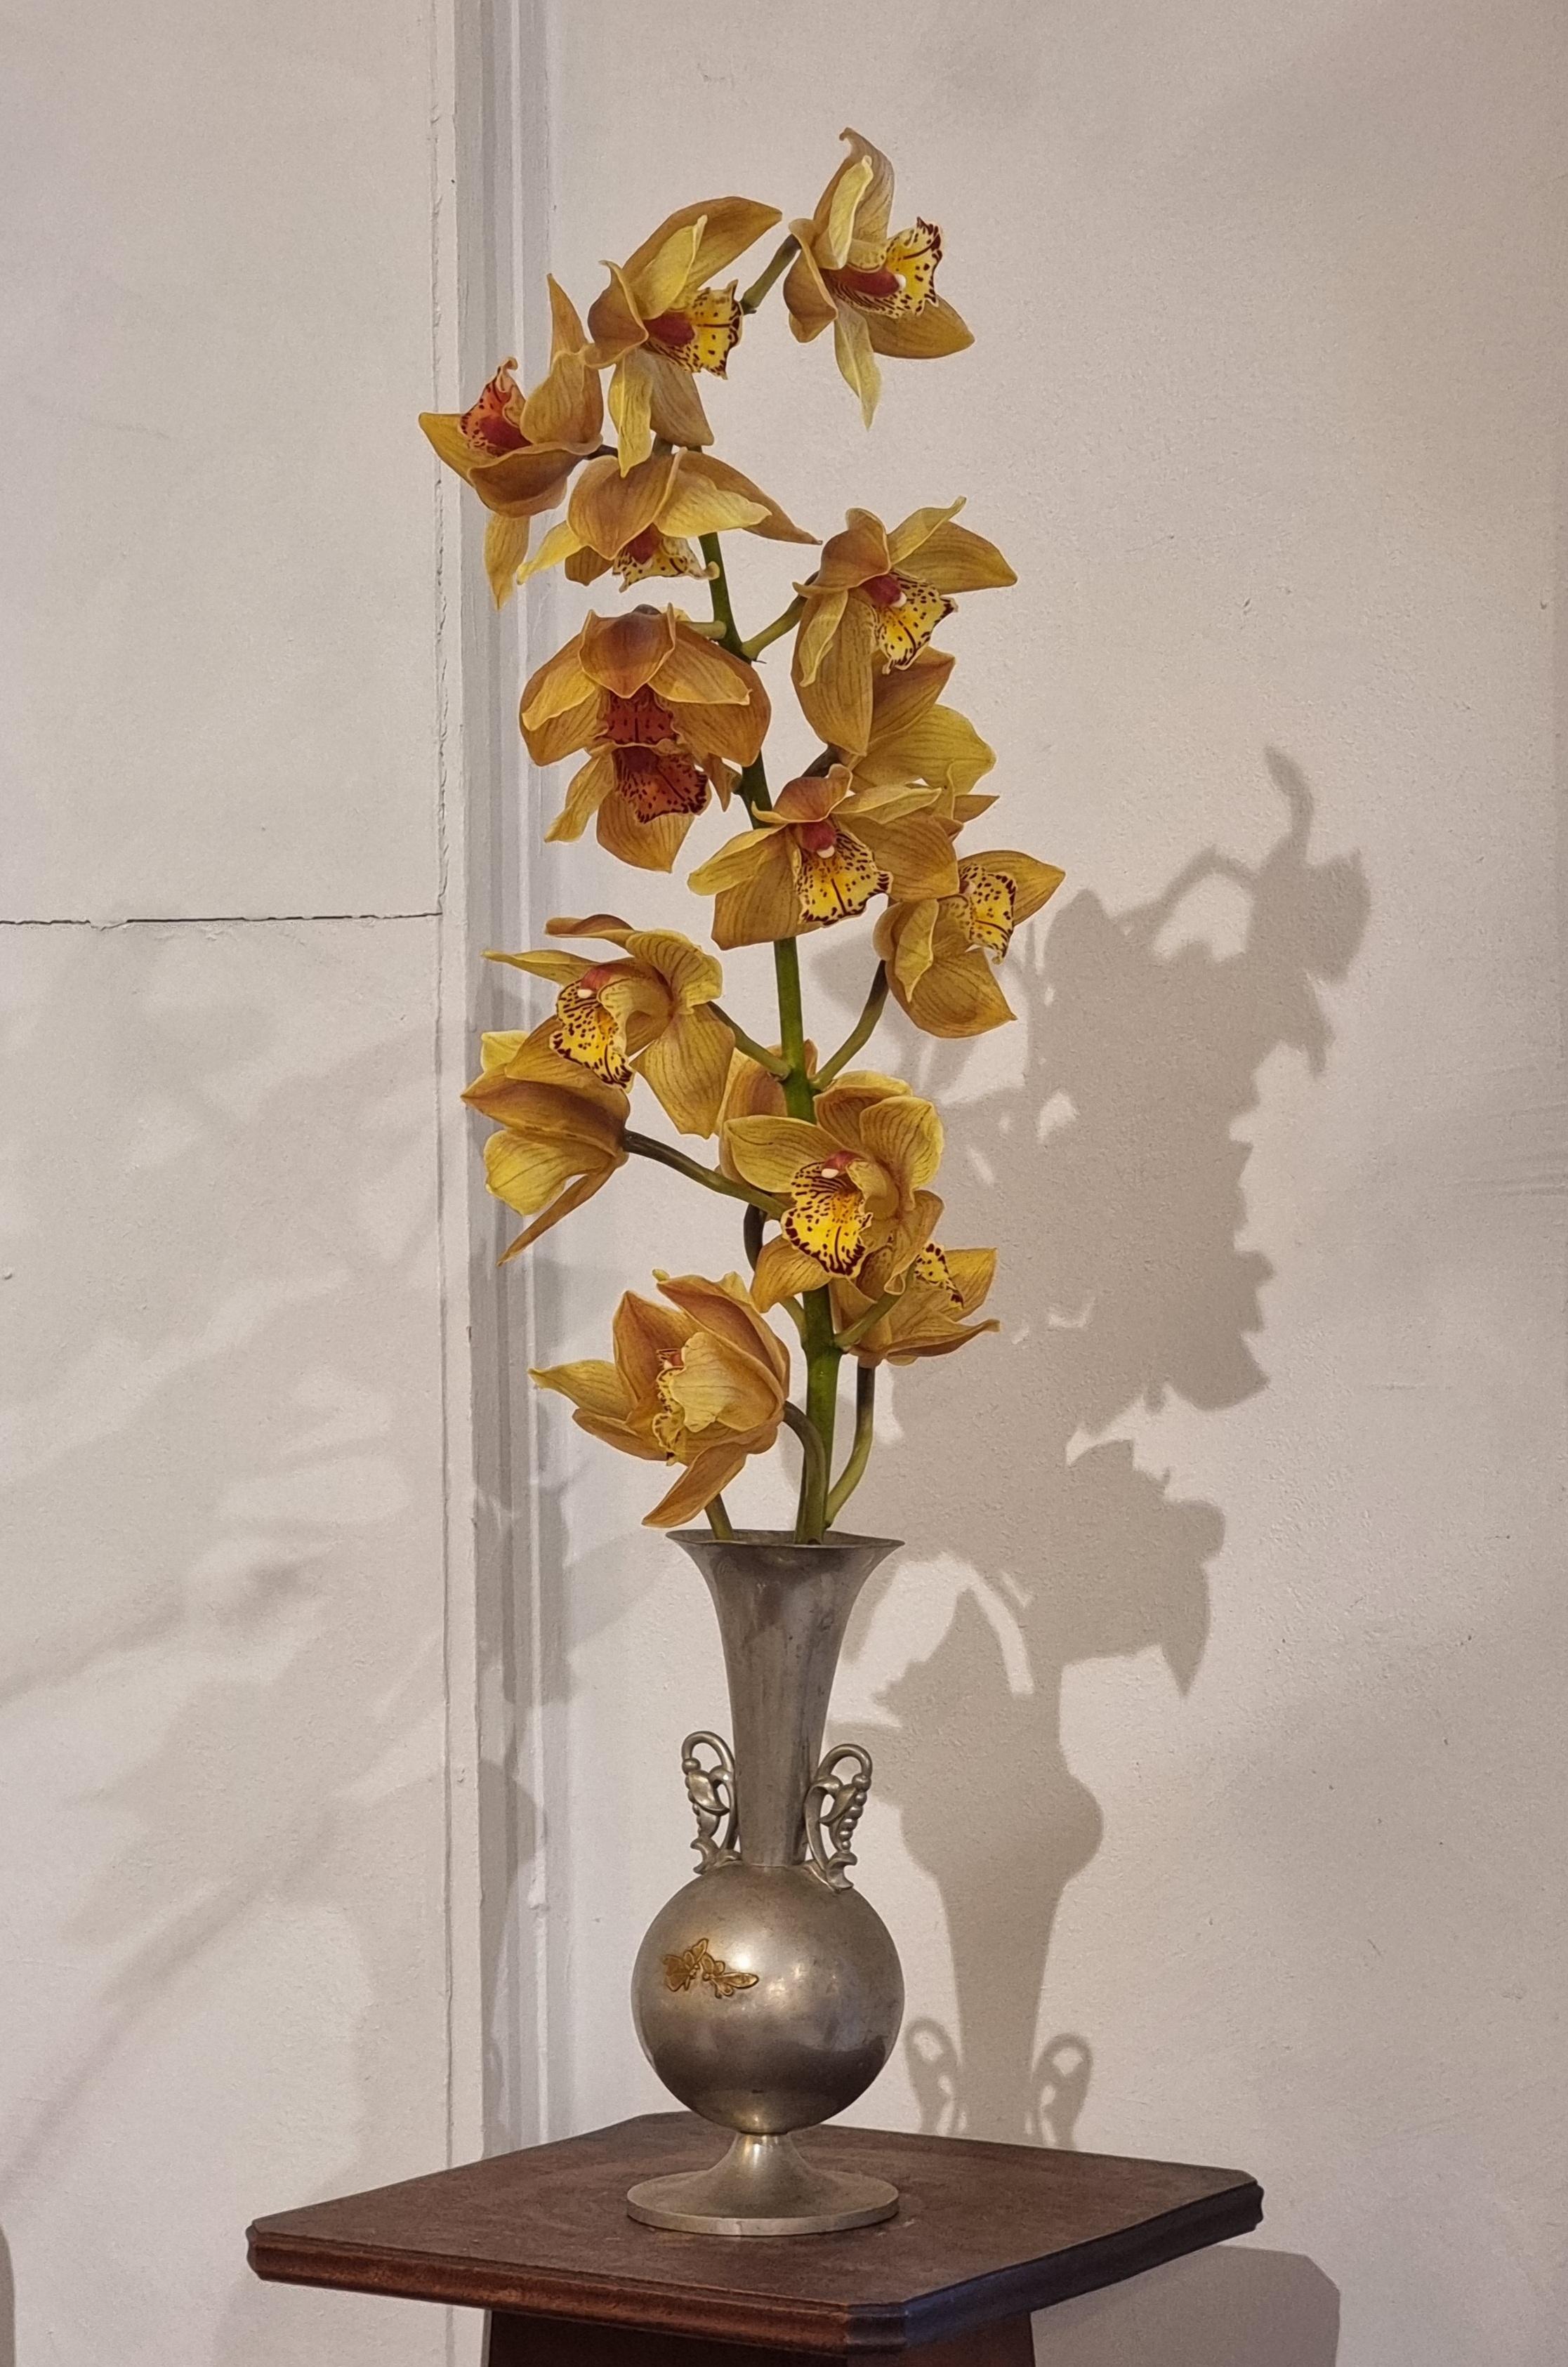 Vase aus Zinn mit Messingintarsien, die Schmetterlinge darstellen, schöne blumenförmige Griffe. 

Hergestellt von KE & Co, Schweden 1934 / Swedish Grace. In gutem Zustand, die Vase kippt ein wenig. Ein charmantes, zeitloses und seltenes Stück,